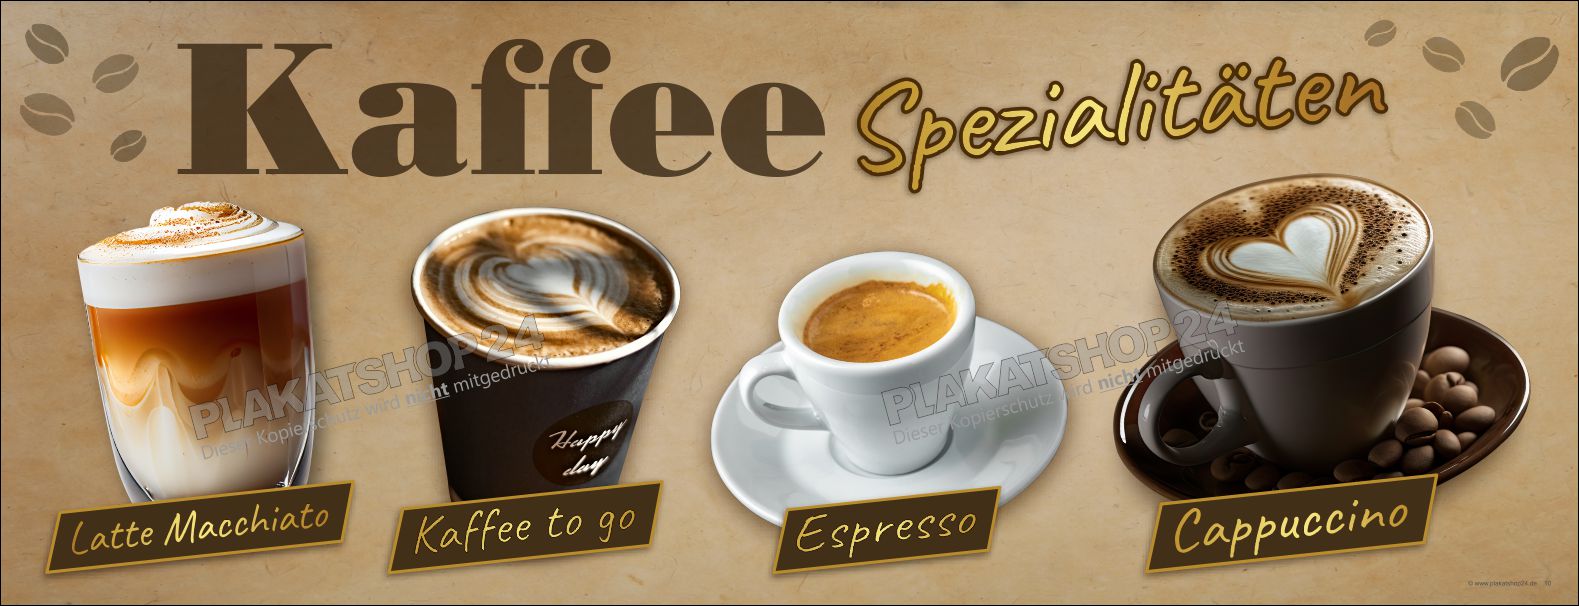 Werbebanner für Kaffeespezialitäten (Cappuccino, Kaffee zum Mitnehmen, Espresso, Latte Macchiato)